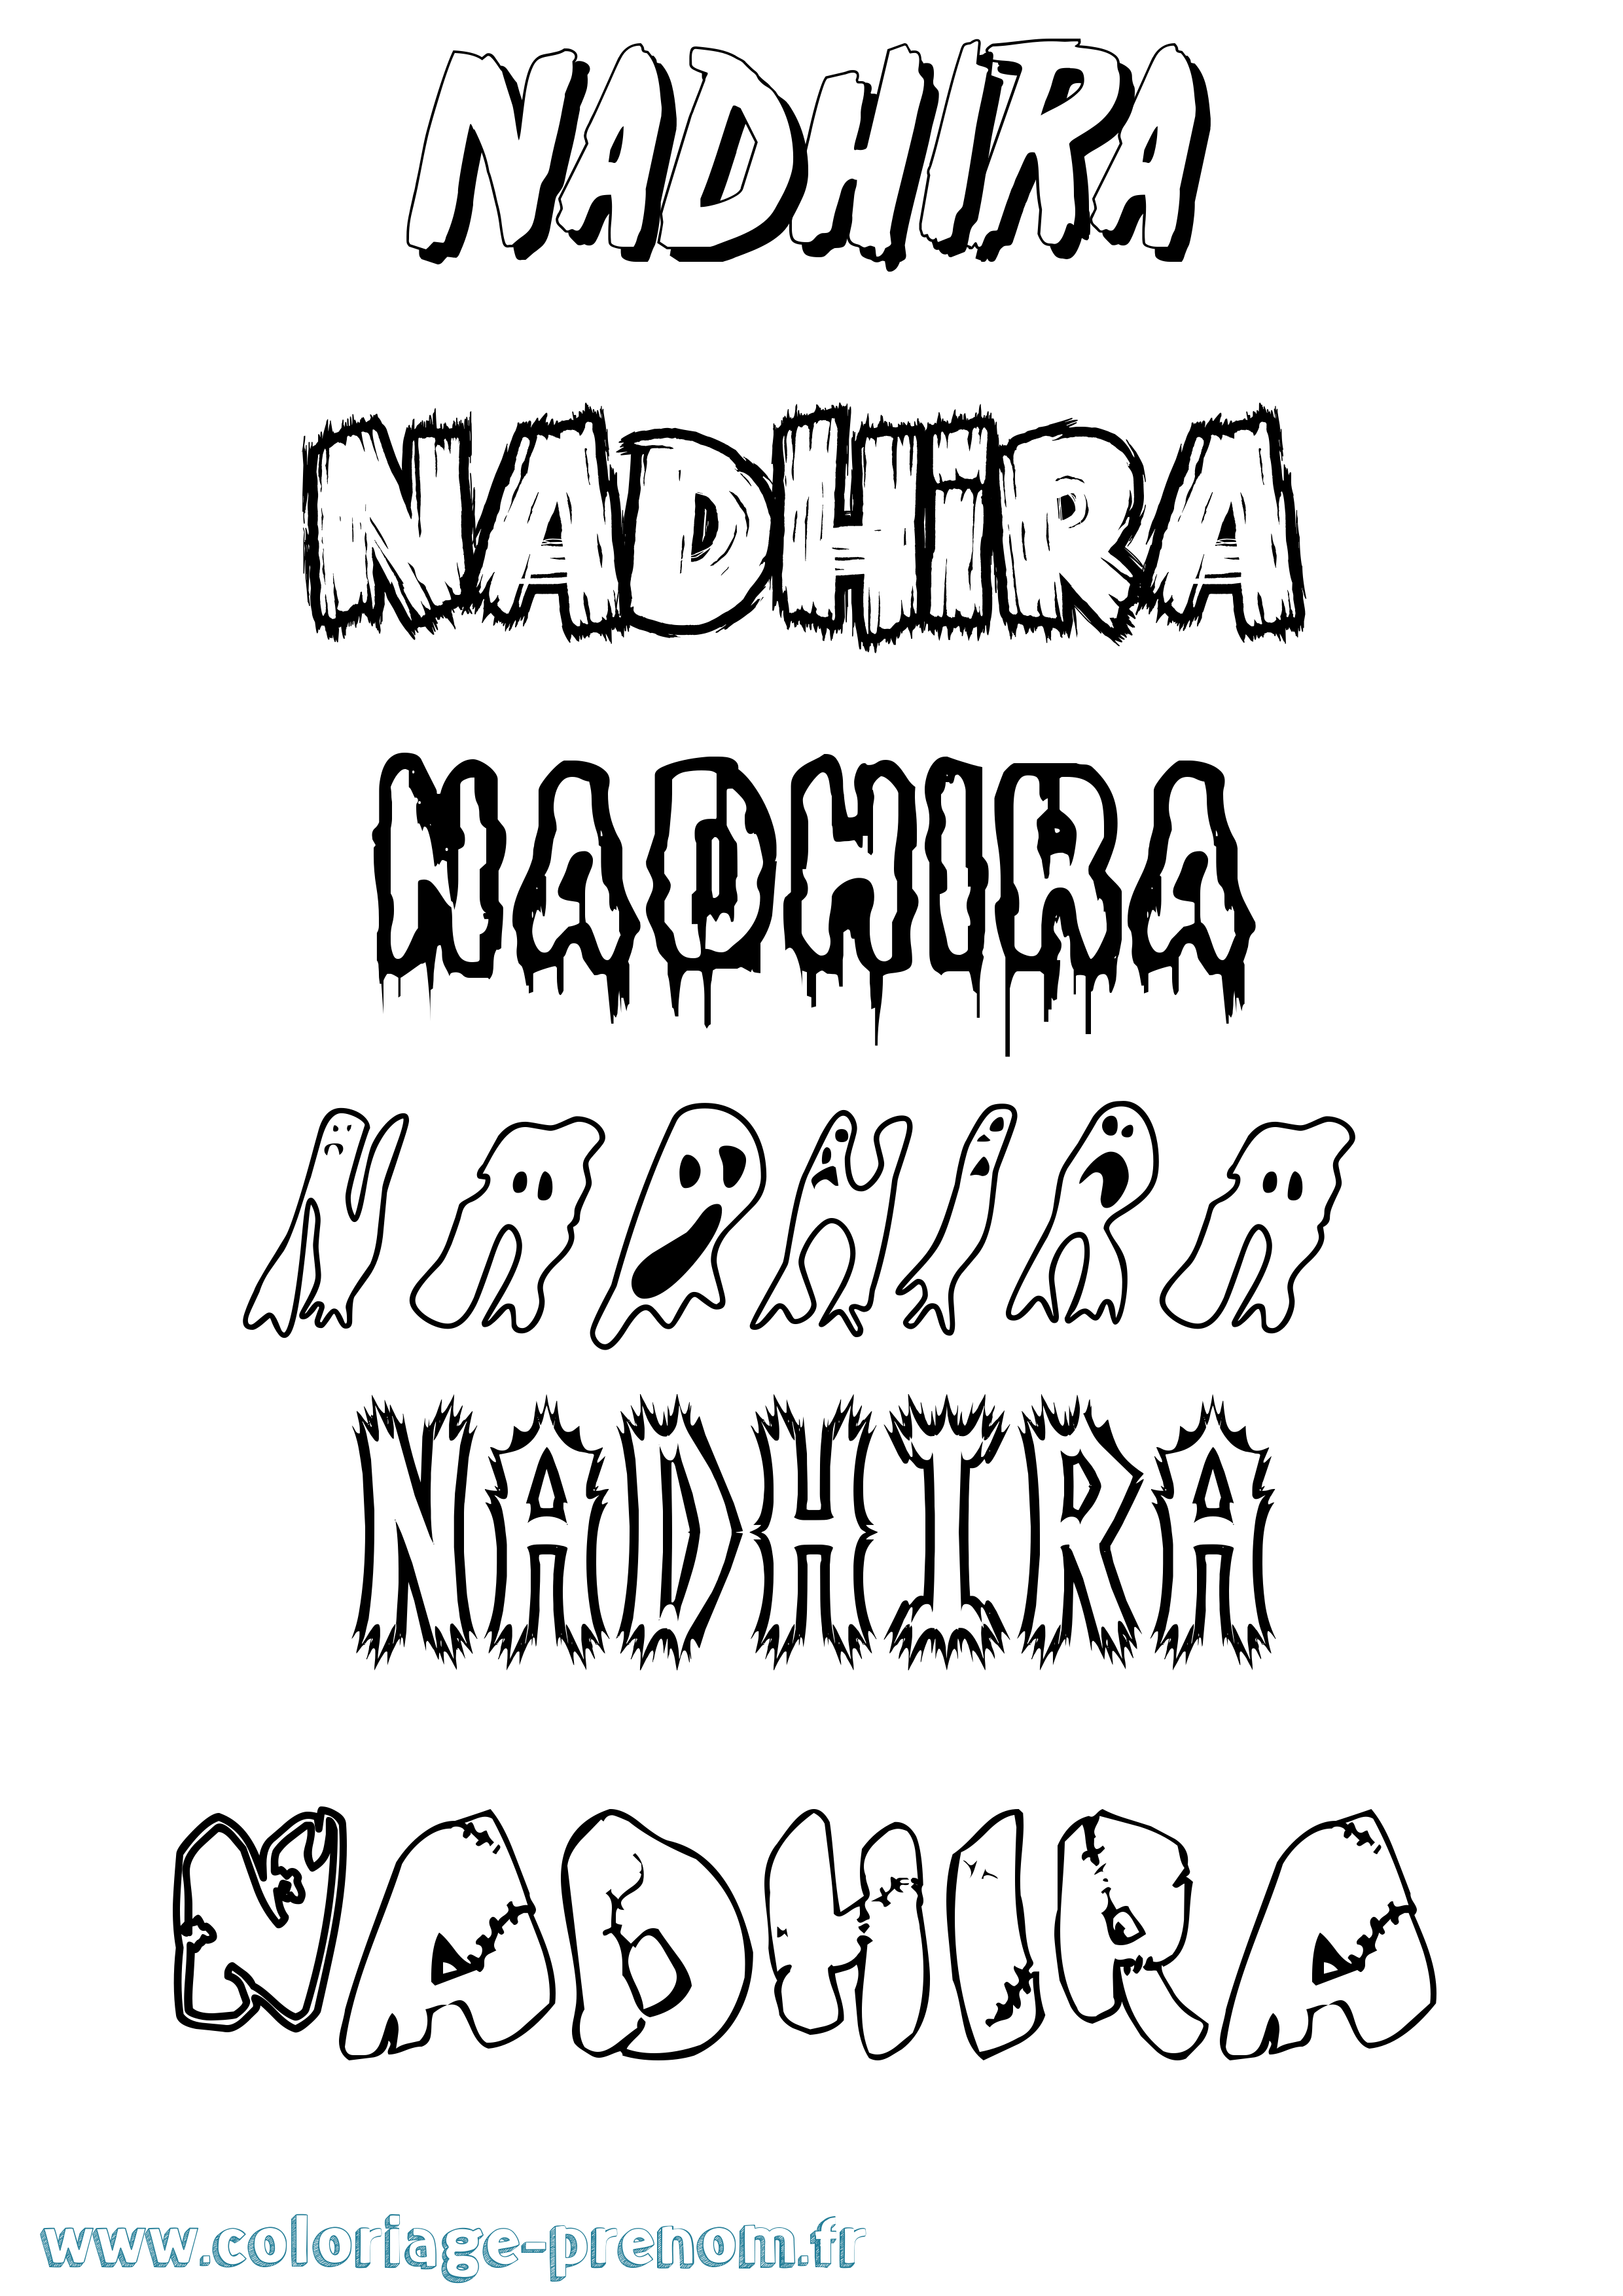 Coloriage prénom Nadhira Frisson